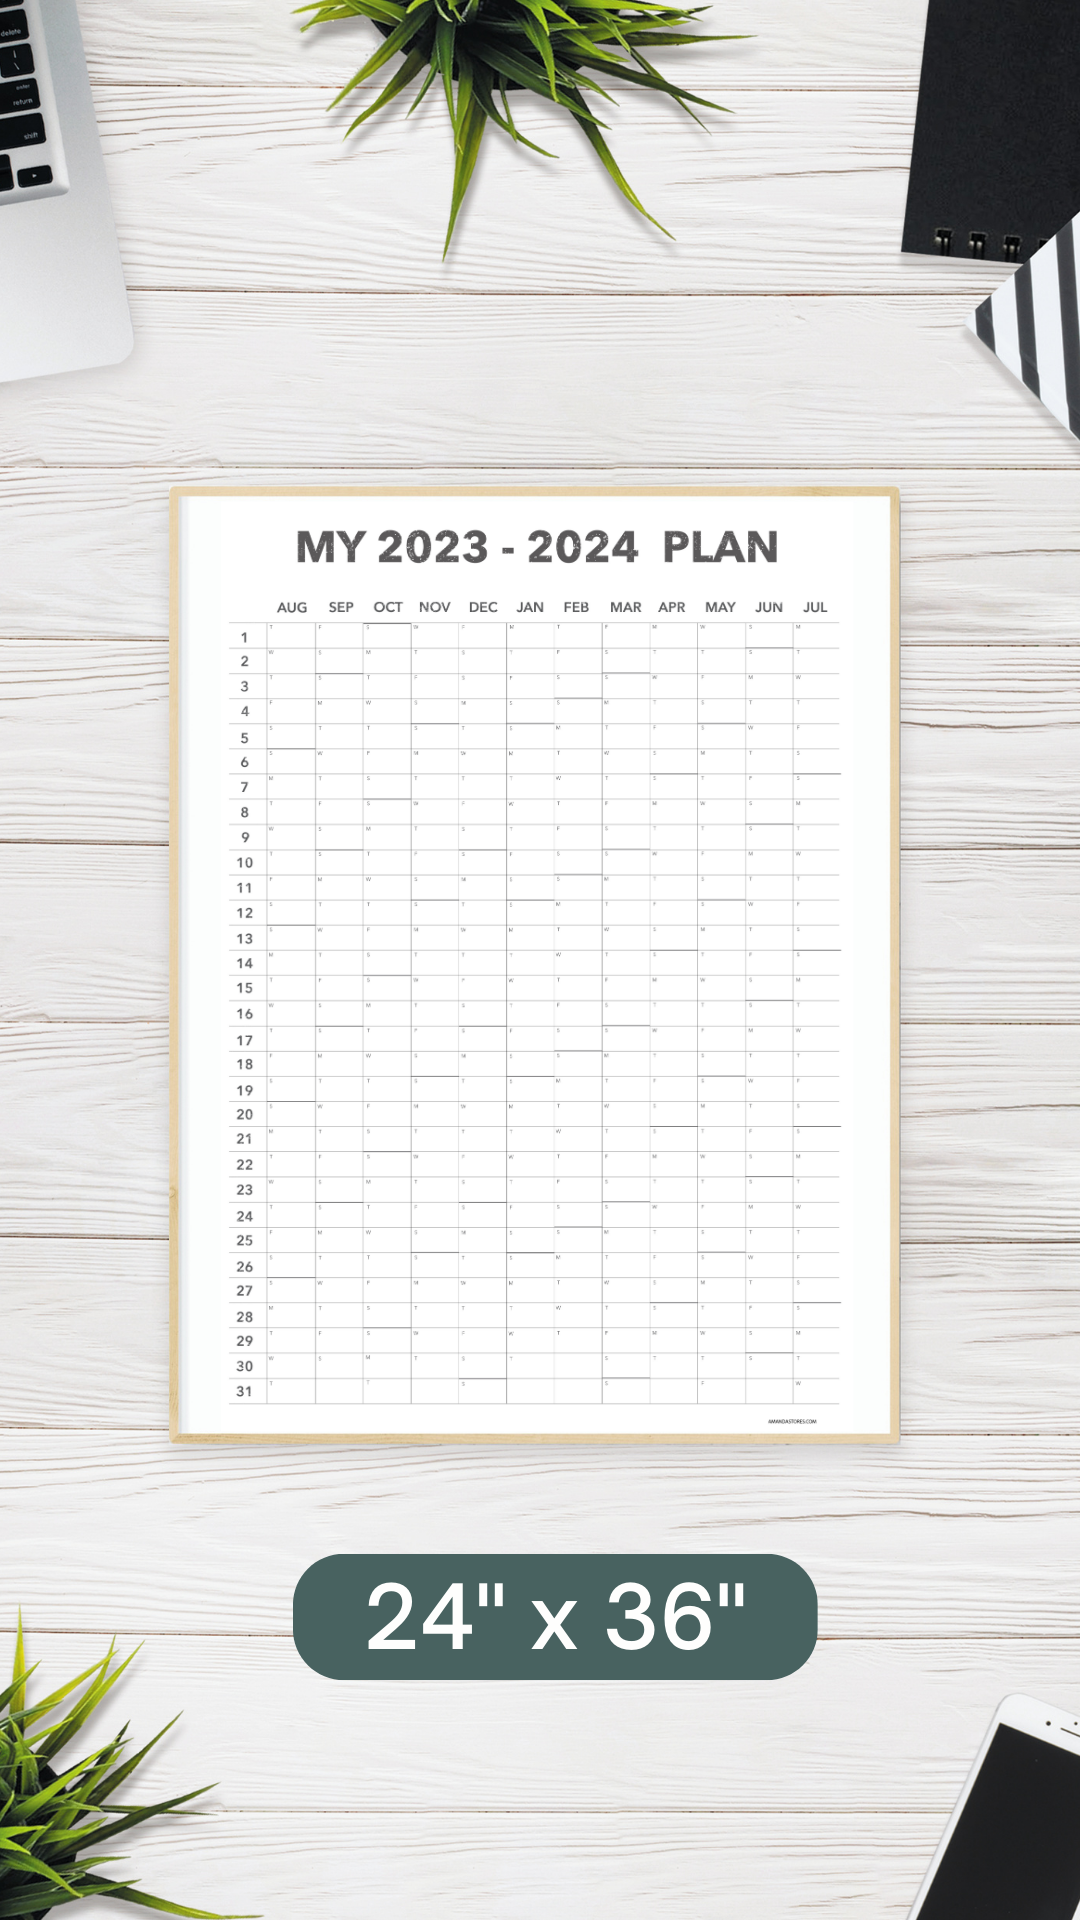 My 2023 - 2024 Plan Wall Calendar - DIGITAL COPY